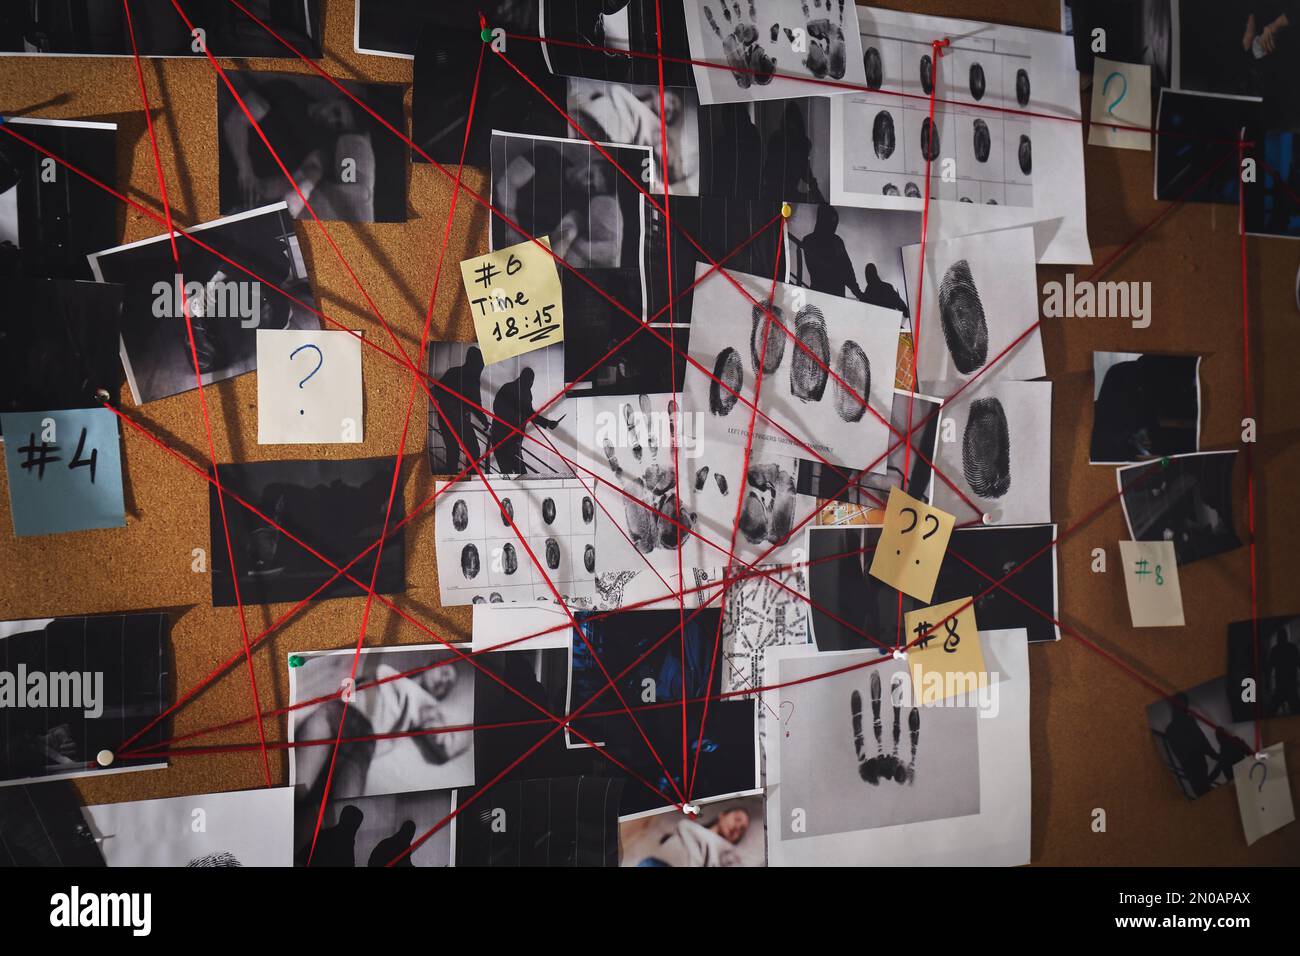 Tableau de détection avec empreintes digitales, photos de scènes de crime et fils rouges Banque D'Images